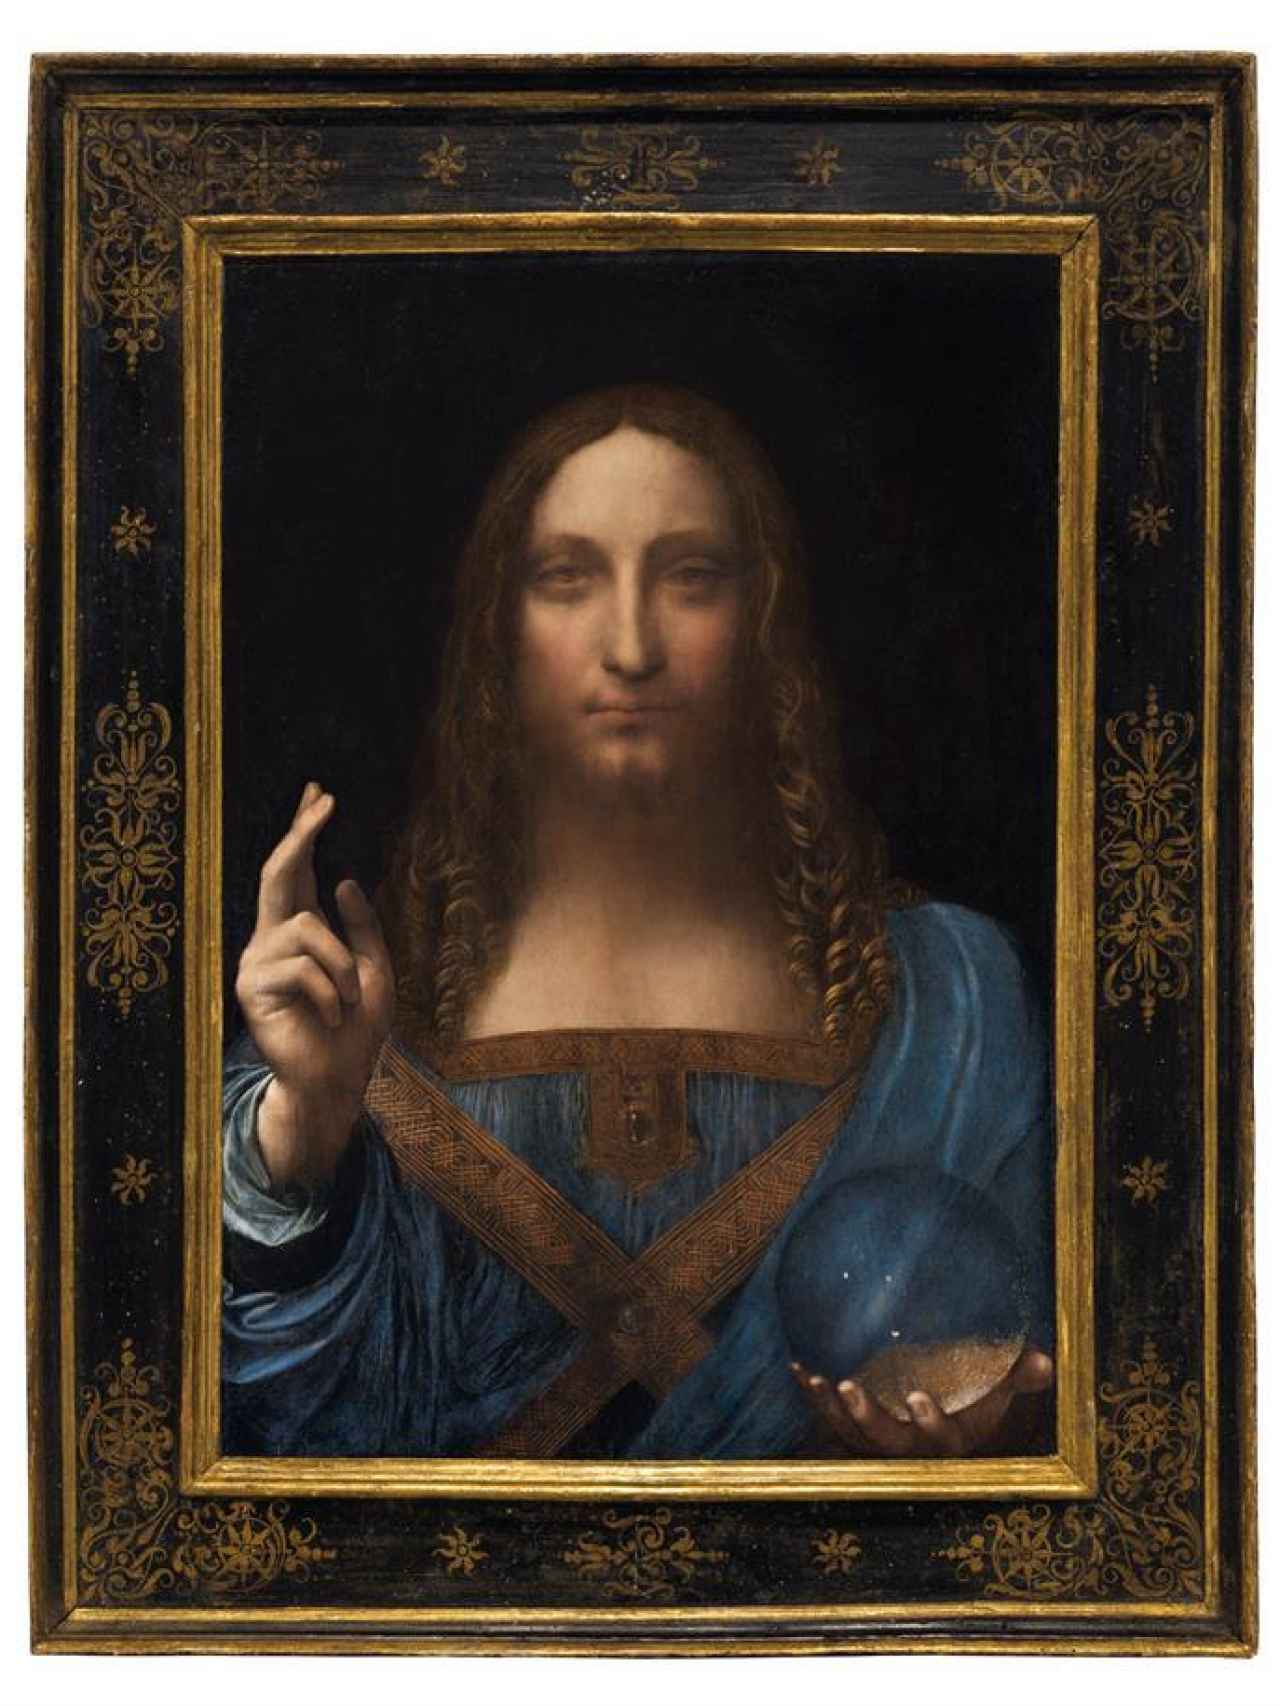 El cuadro de Leonardo que sale a la venta.